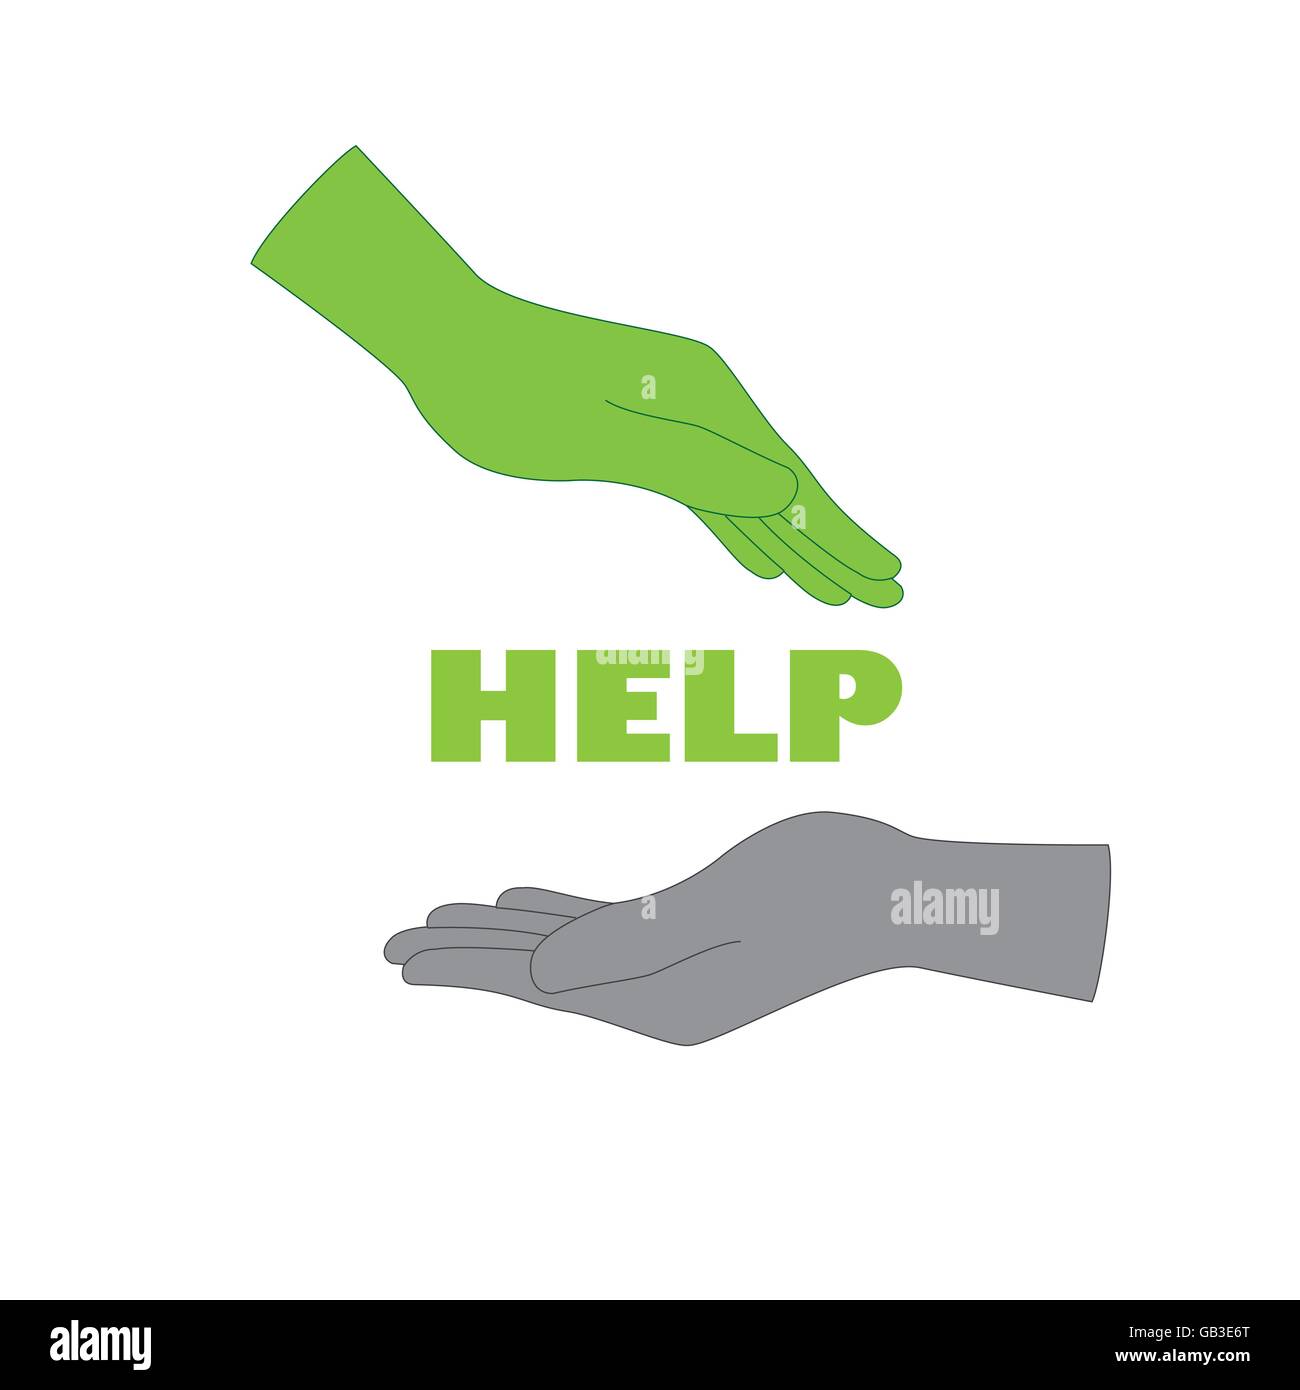 helping hands logo vector